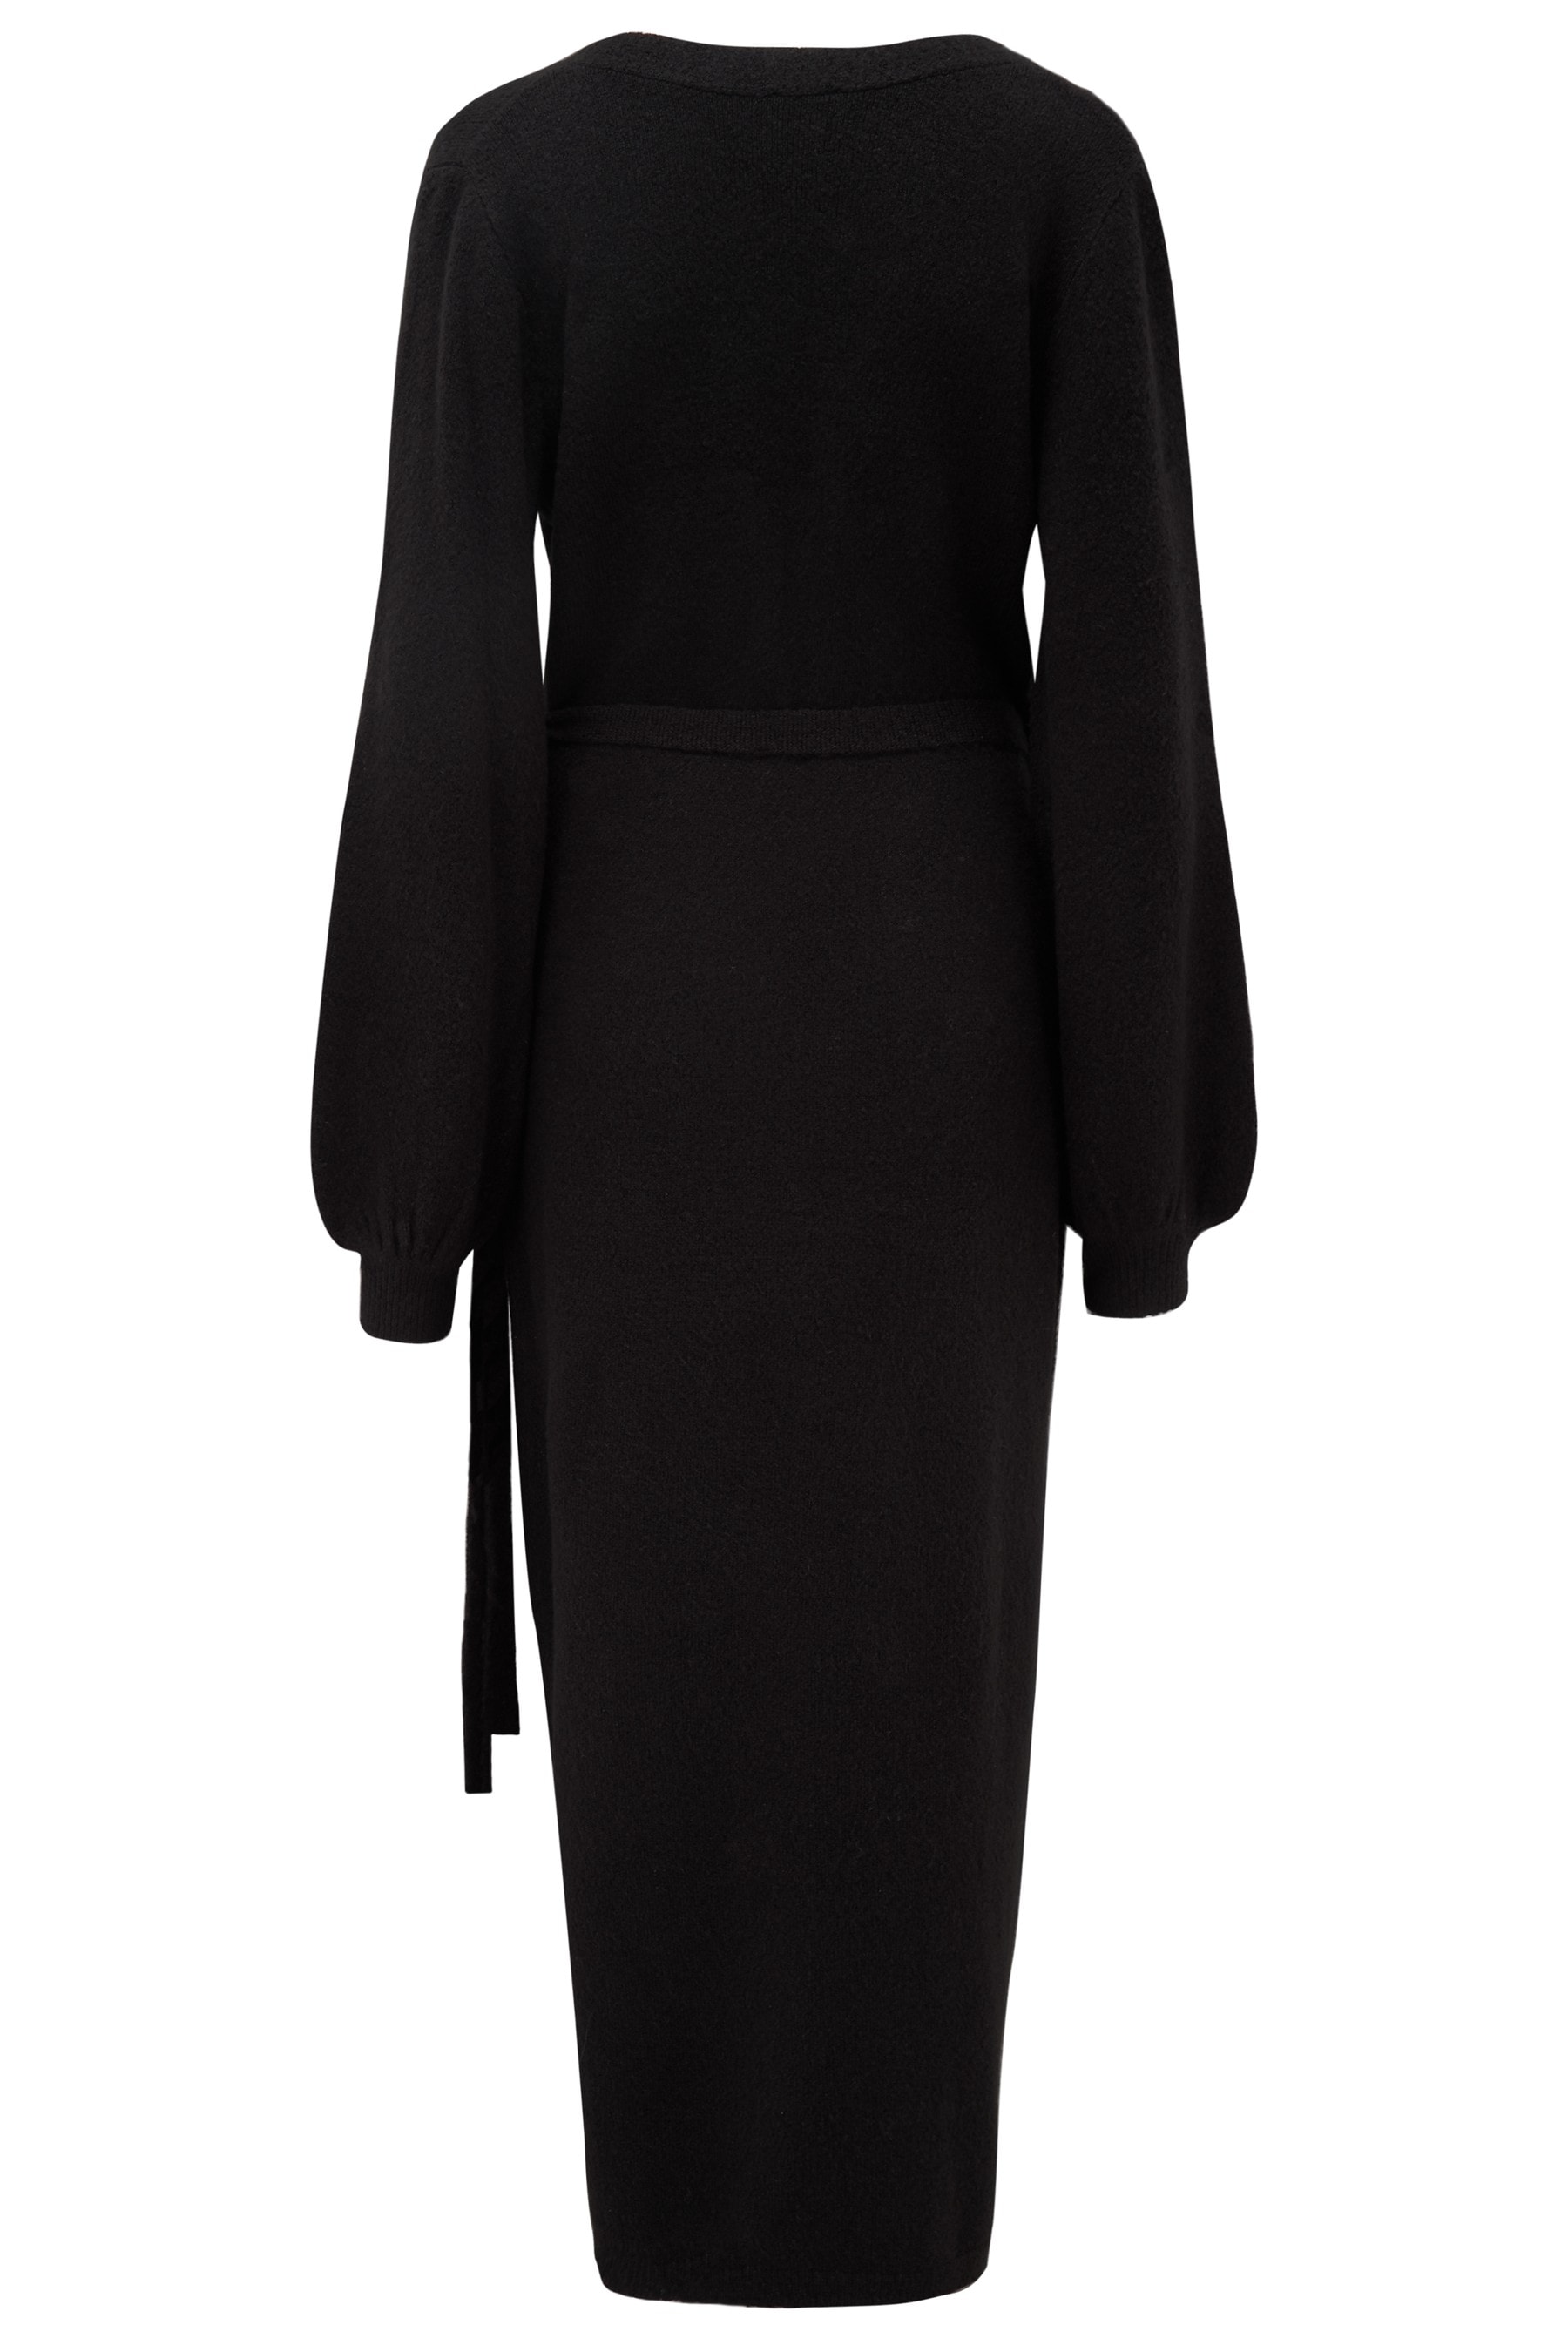 Buy Pour Moi Black Elle Knit Midi Wrap Dress from the Next UK online shop